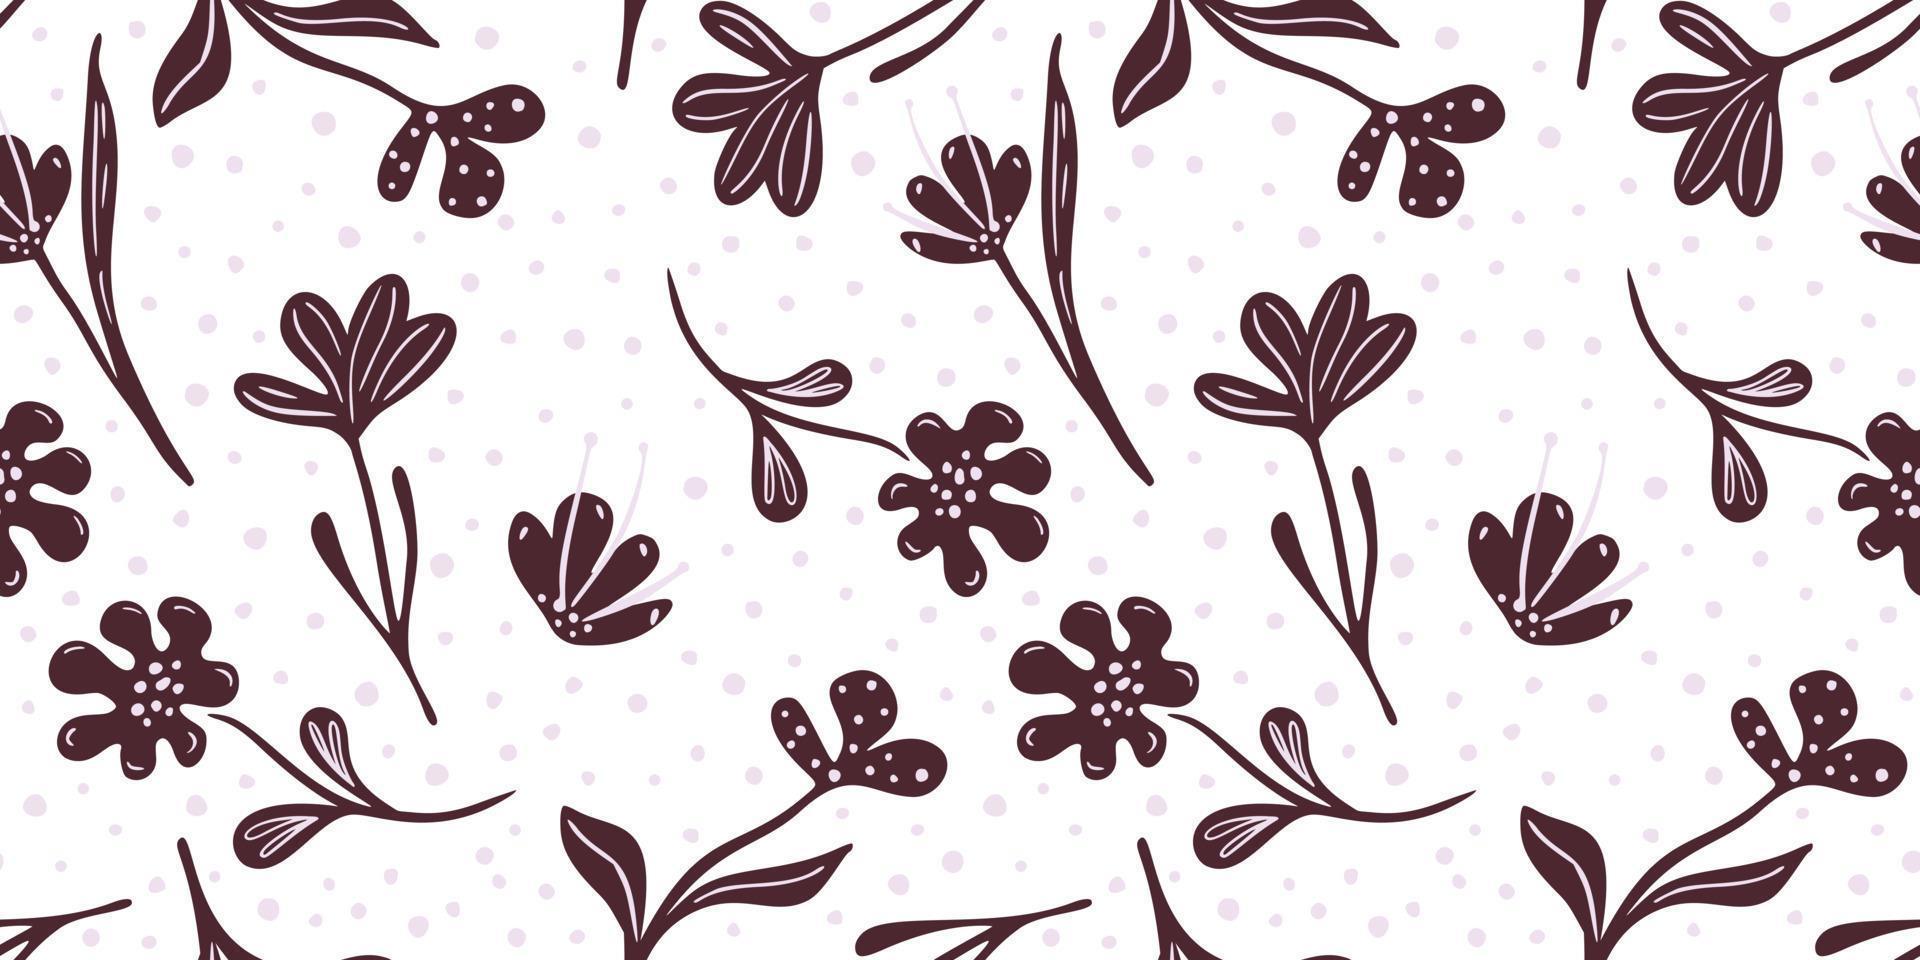 patrón floral abstracto sin fisuras sobre fondo blanco. pradera de flores marrones en estilo garabato. vector